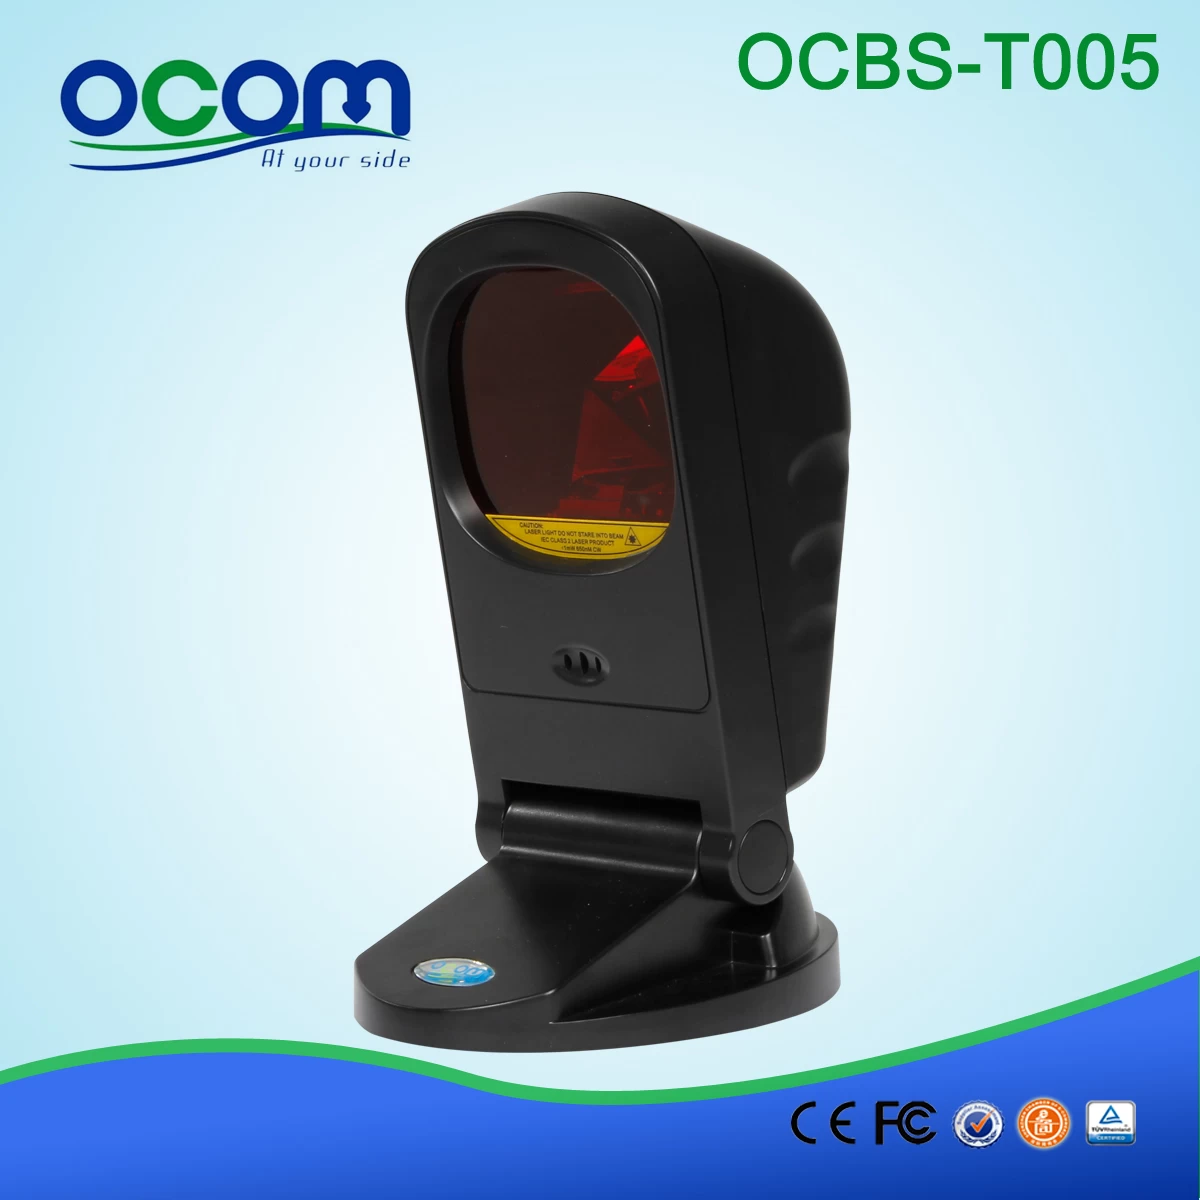 (OCBS-T005) Desktop Omni-directional Barcode Reader